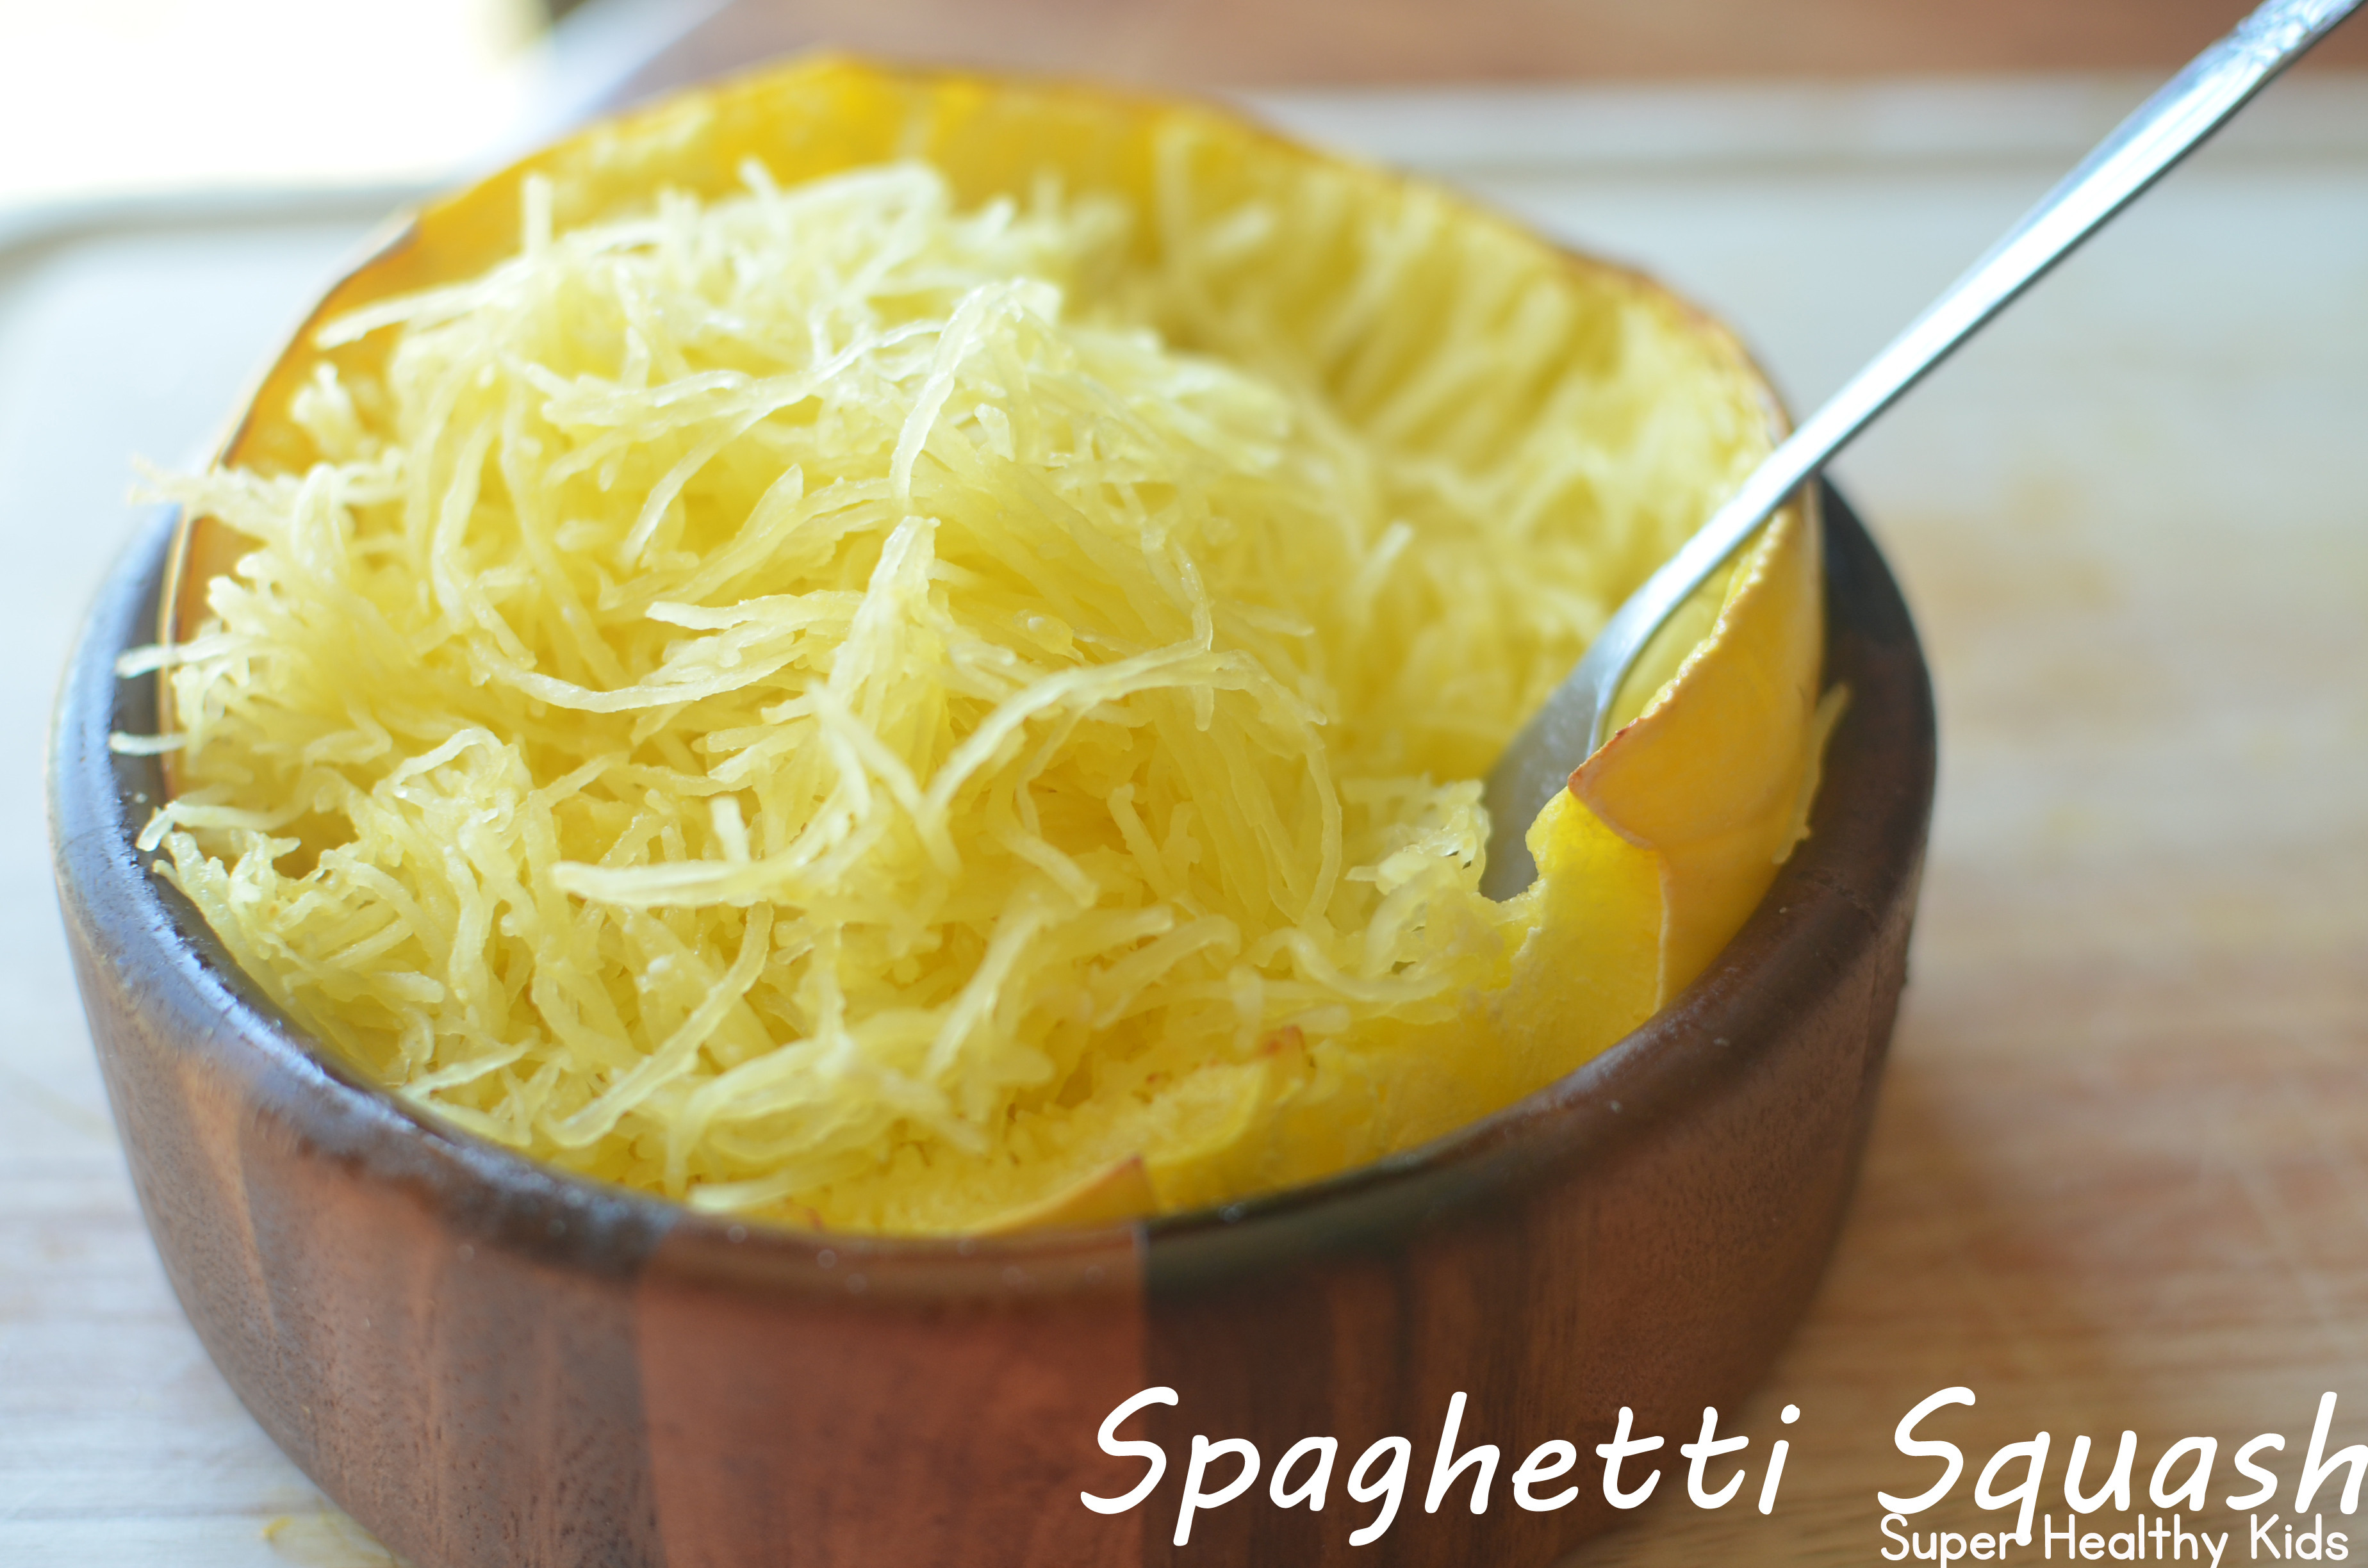 Is Spaghetti Squash Healthy
 Super Simple Spaghetti Squash Recipe